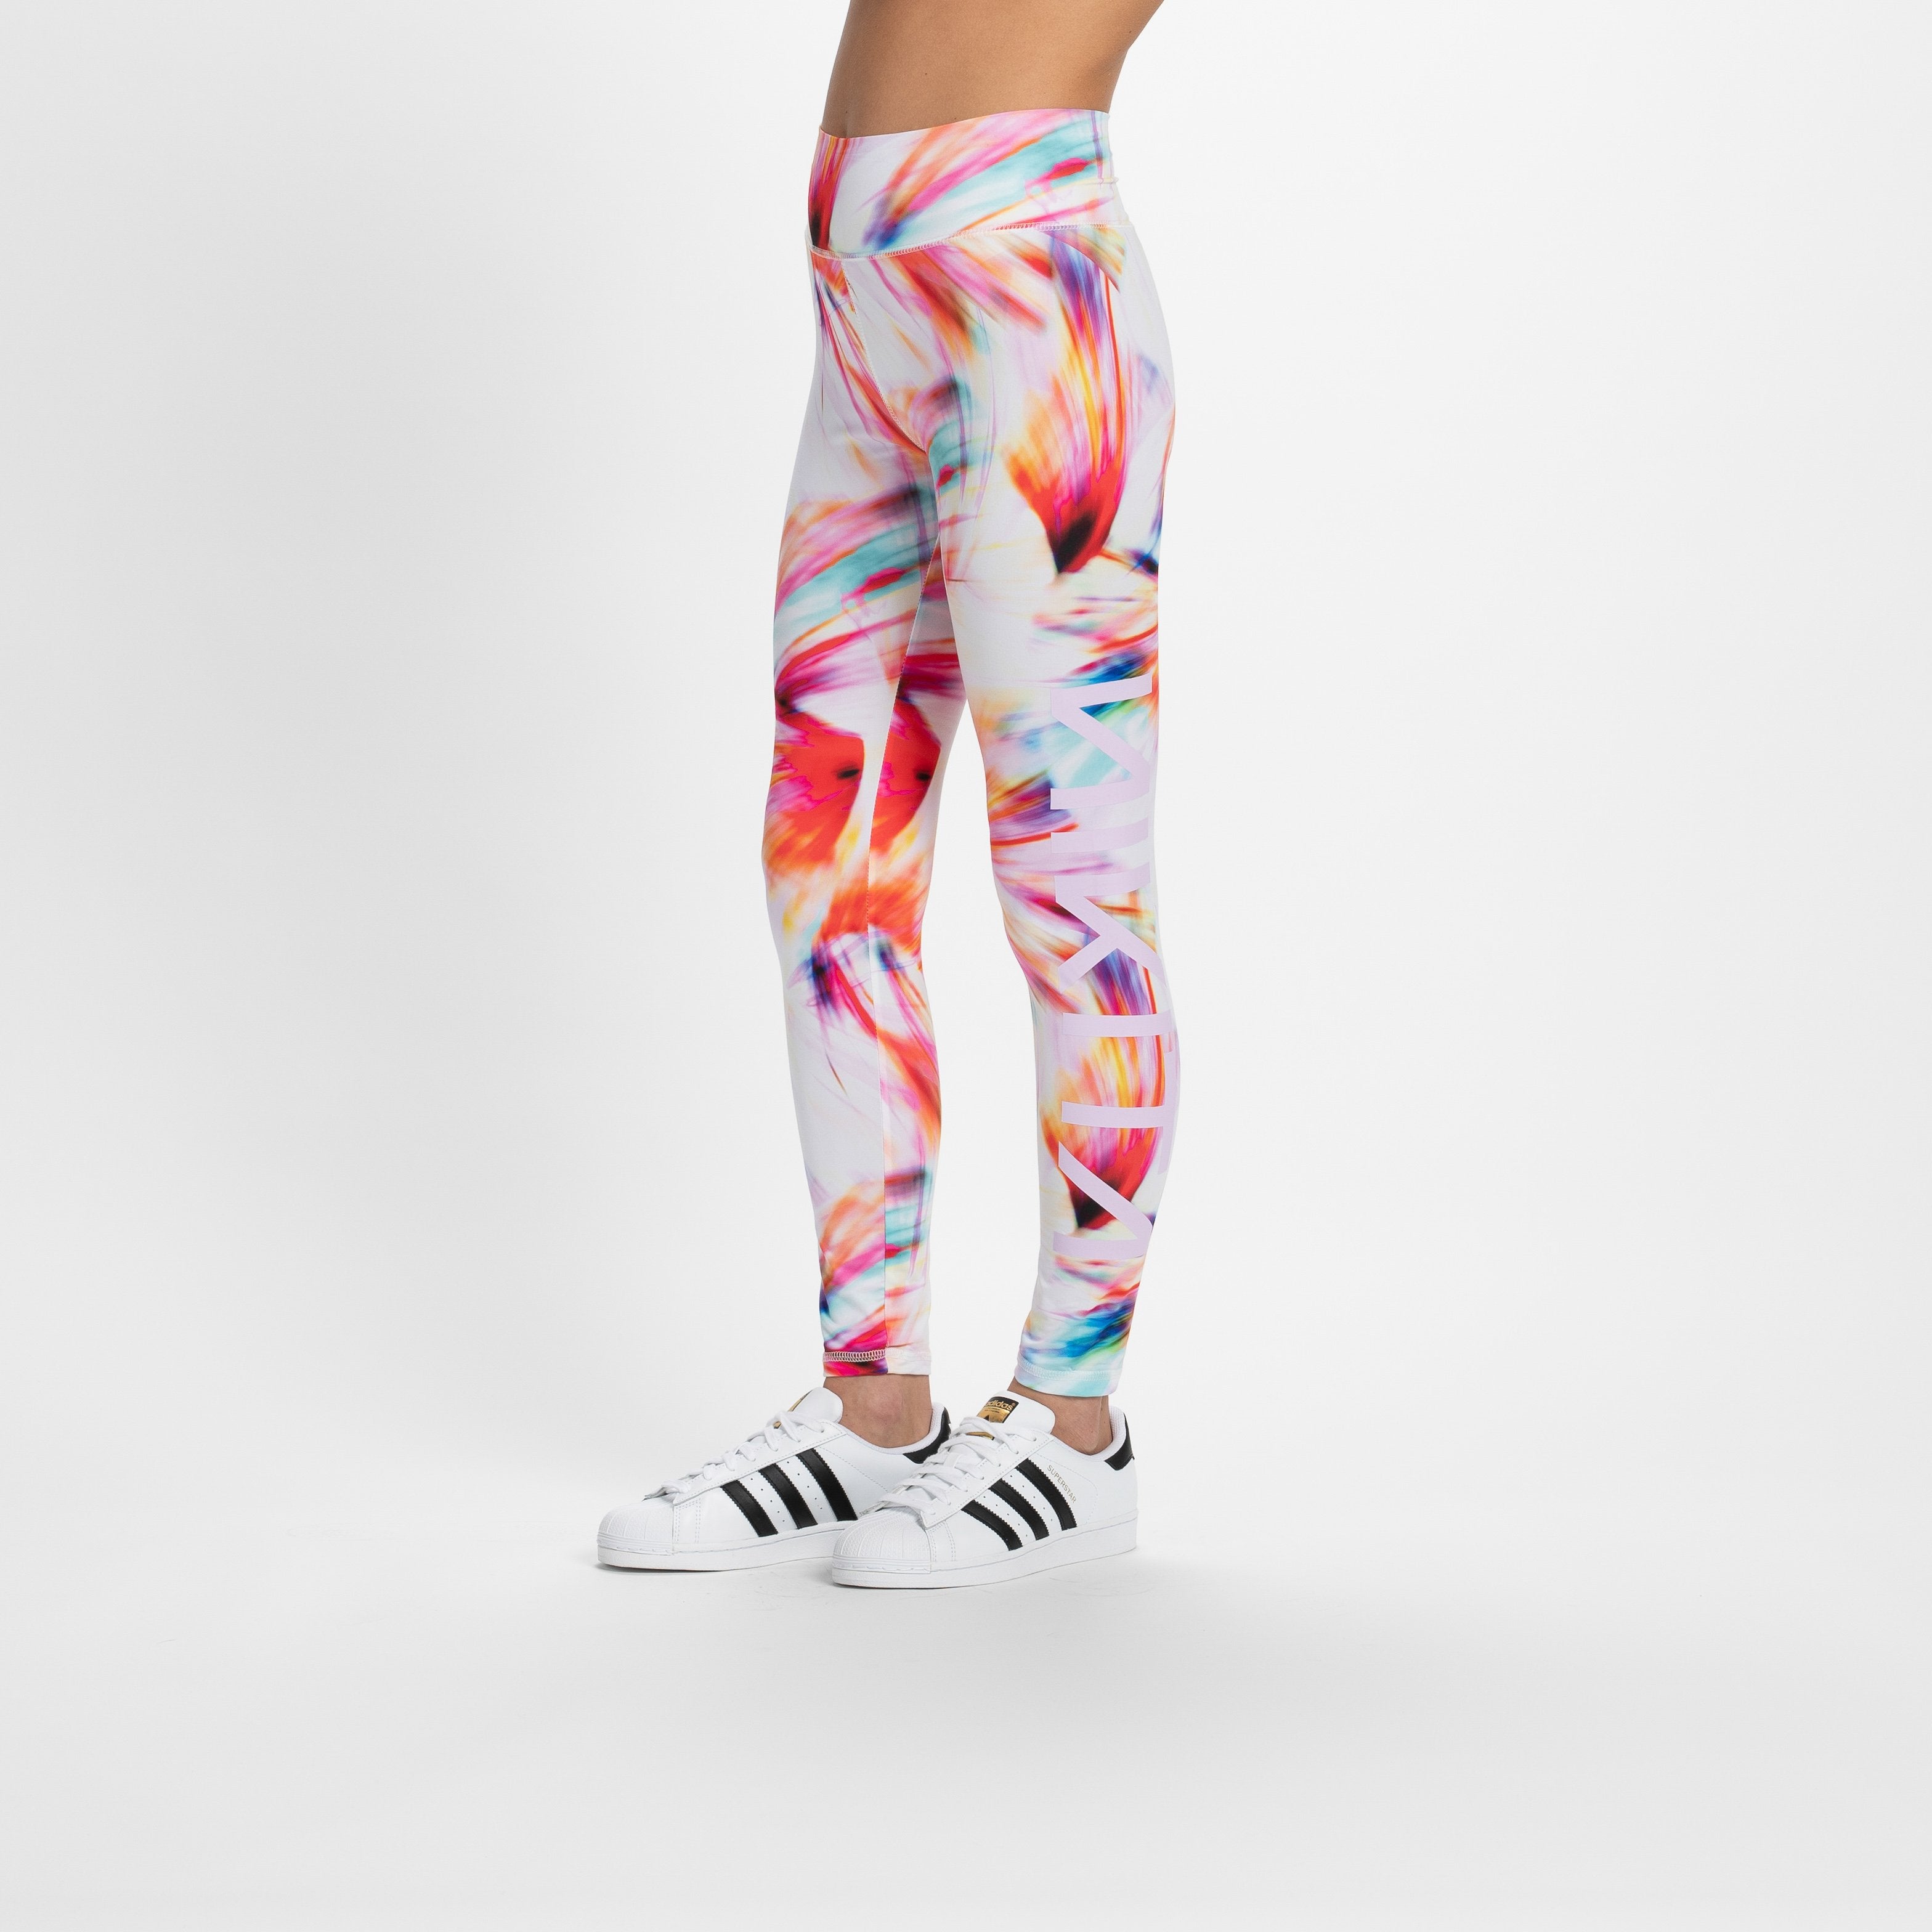 Nike Women's Sportswear Hyper Femme Leggings